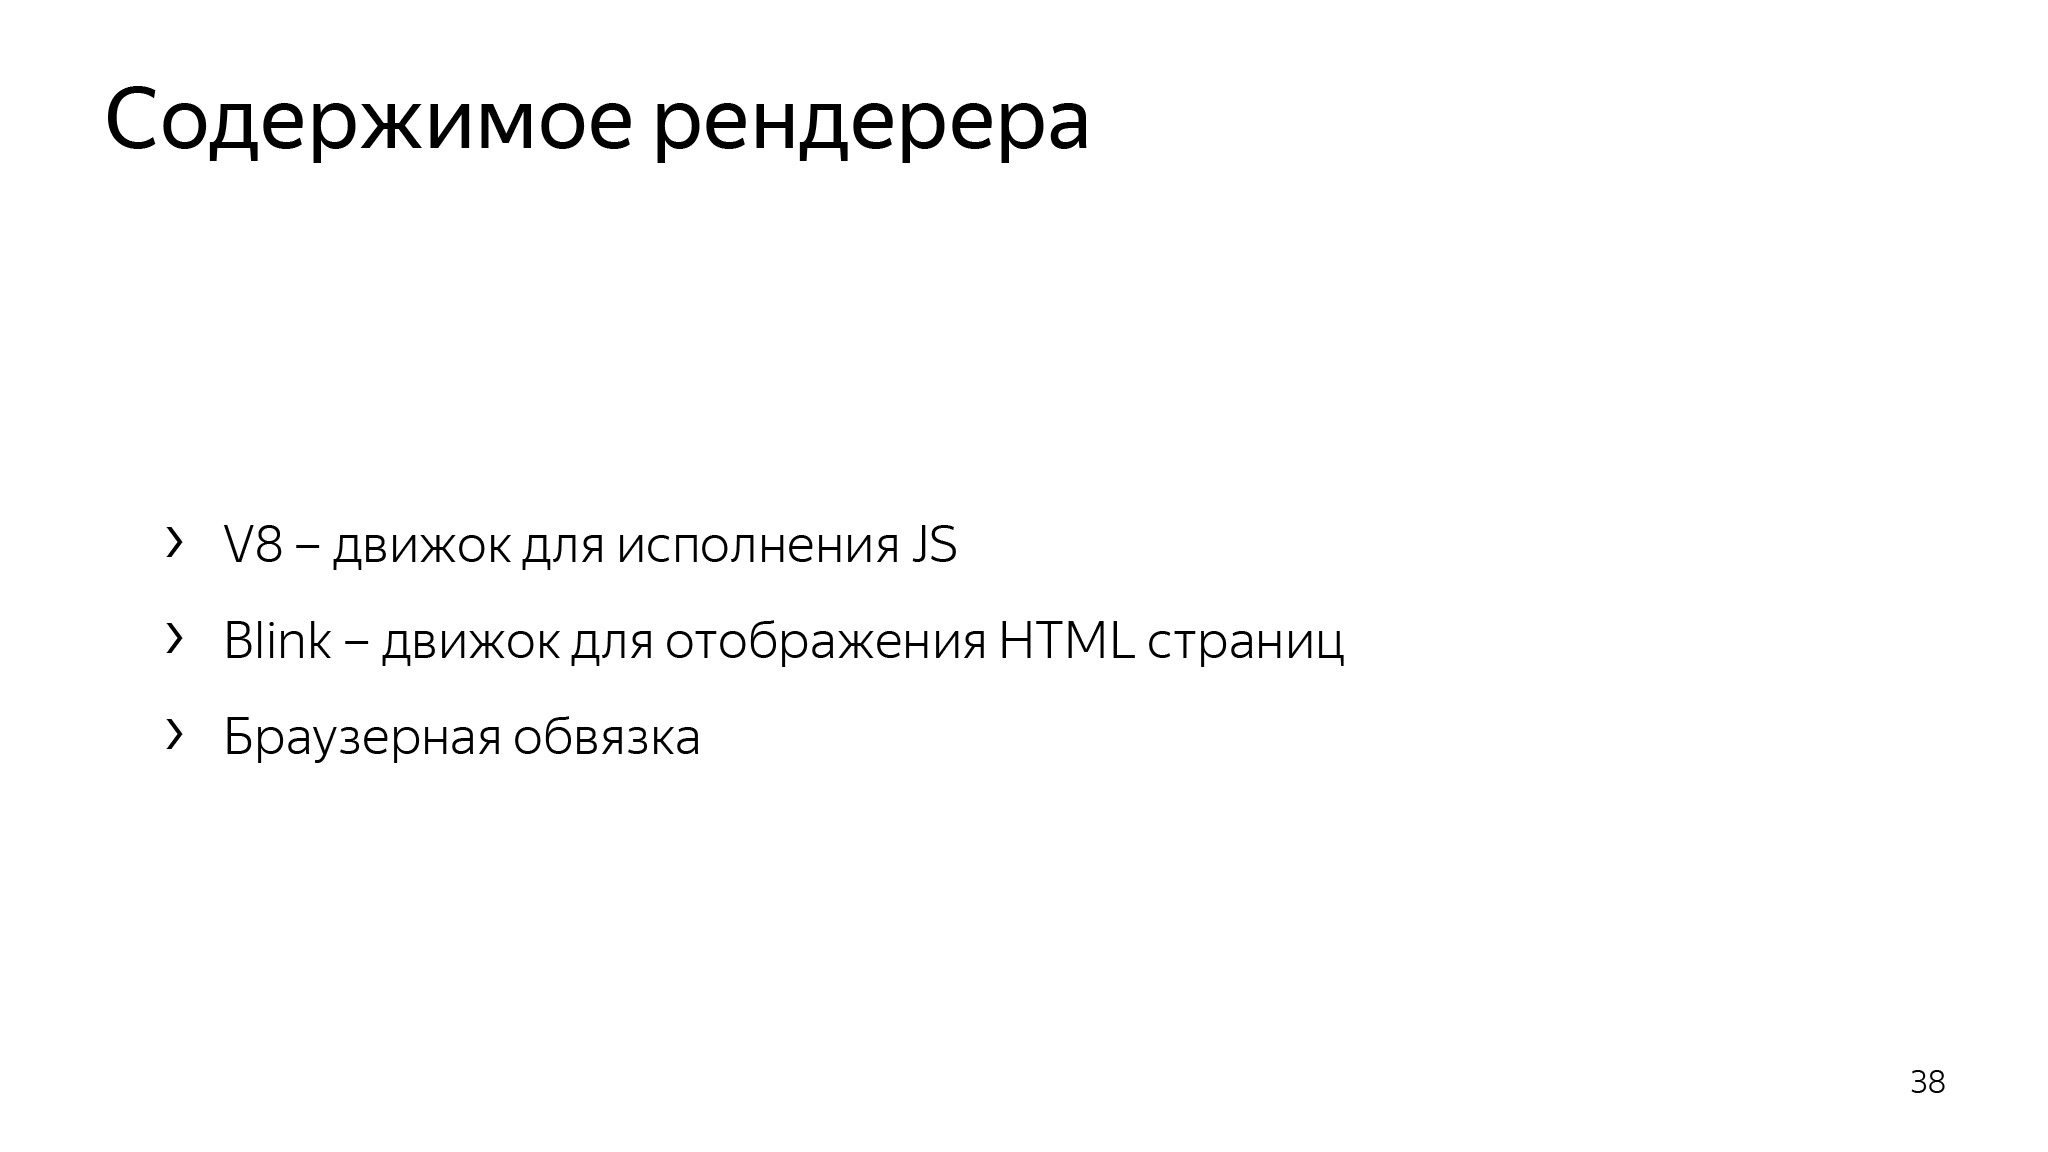 Как сэкономить ресурсы в браузере и не сломать веб. Доклад Яндекса - 24